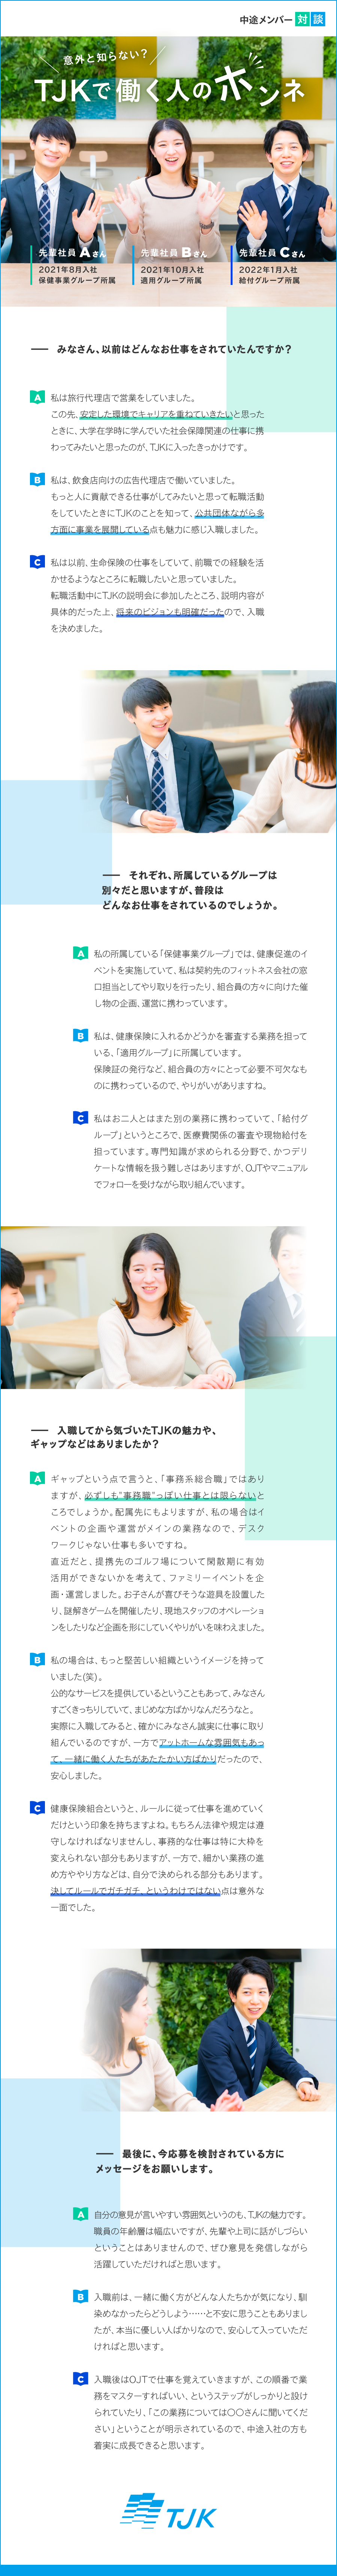 東京都情報サービス産業健康保険組合からのメッセージ